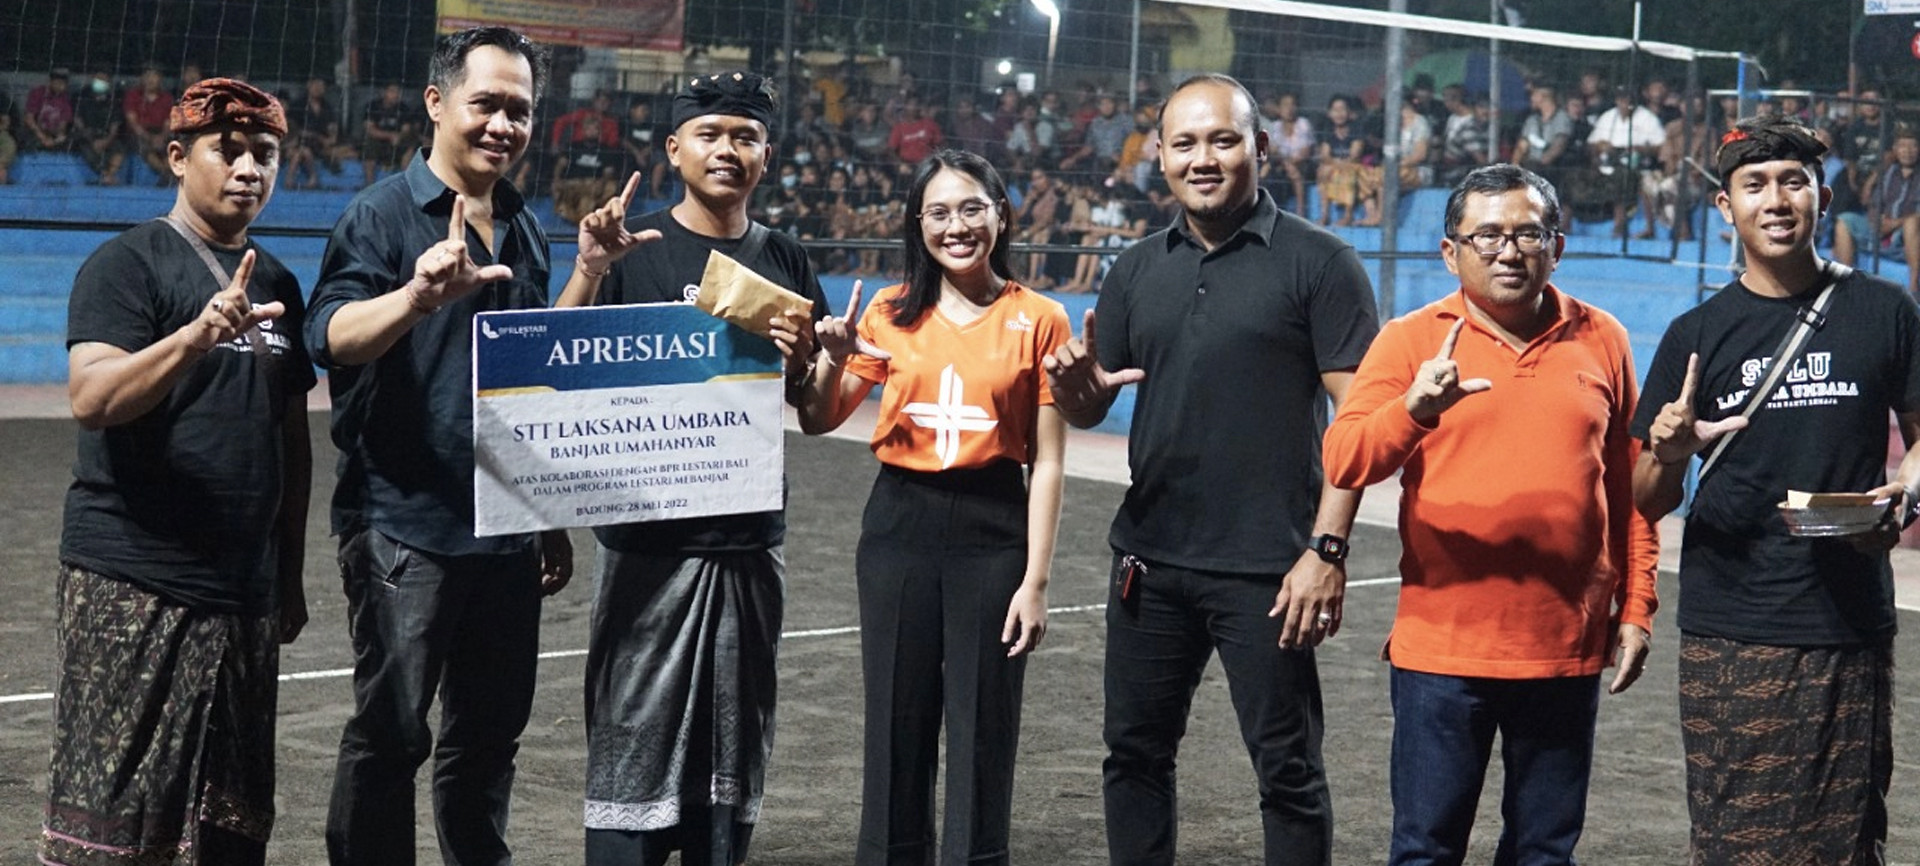 Kembangkan Kreativitas Generasi Muda, BPR Lestari Dukung Kegiatan Olahraga STT Laksana Umbara